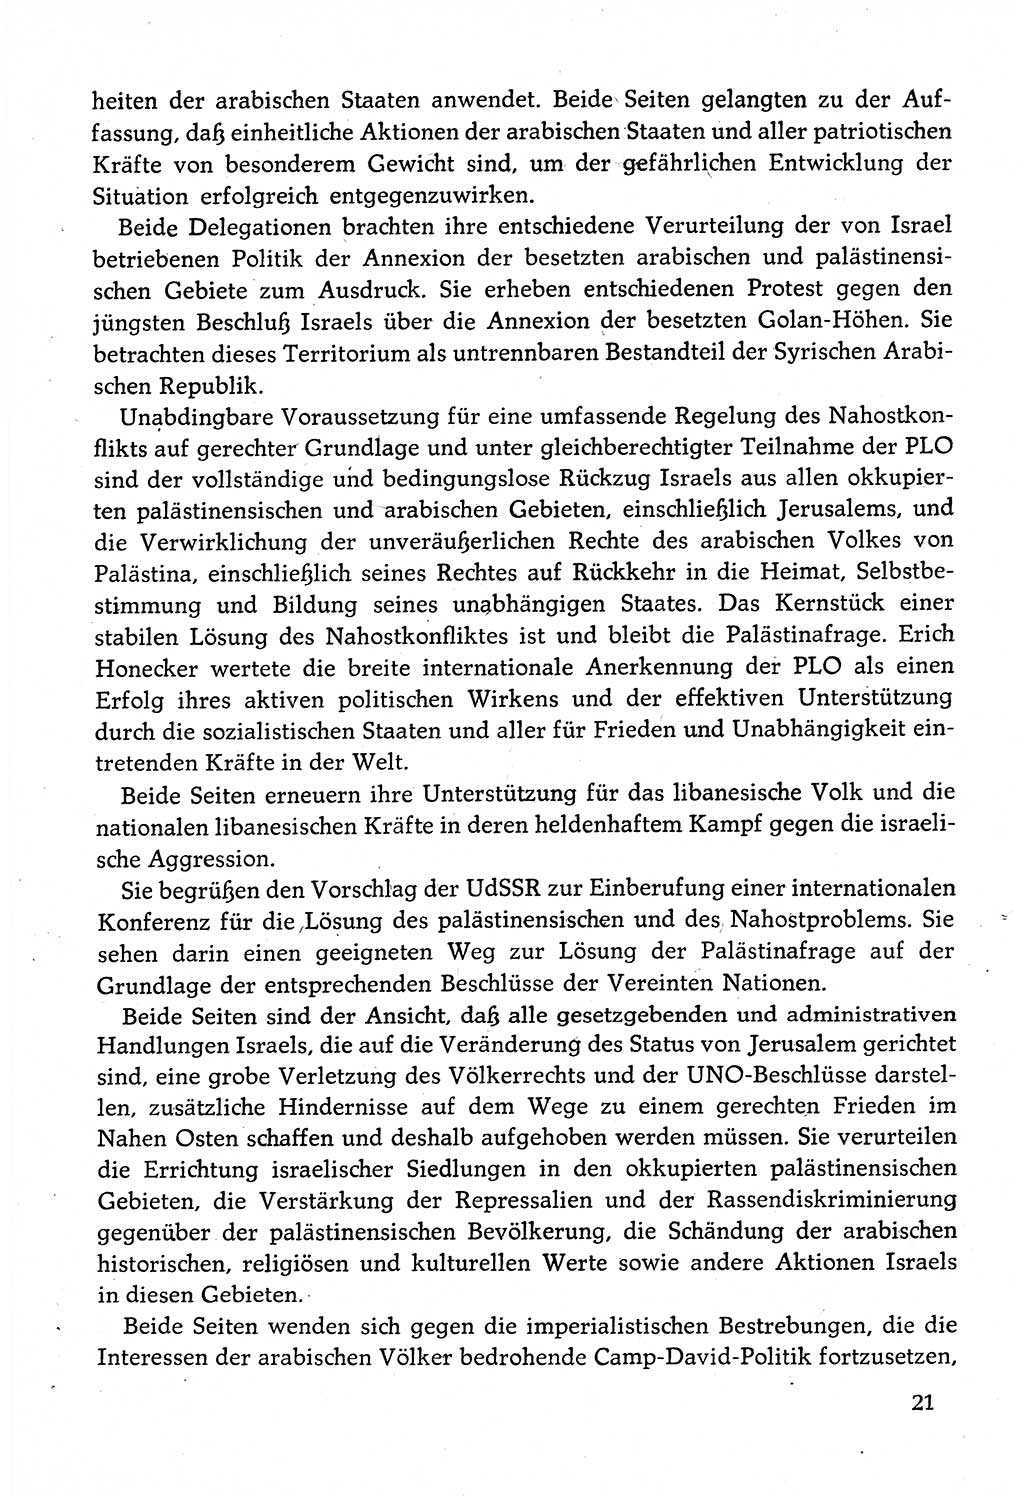 Dokumente der Sozialistischen Einheitspartei Deutschlands (SED) [Deutsche Demokratische Republik (DDR)] 1982-1983, Seite 21 (Dok. SED DDR 1982-1983, S. 21)